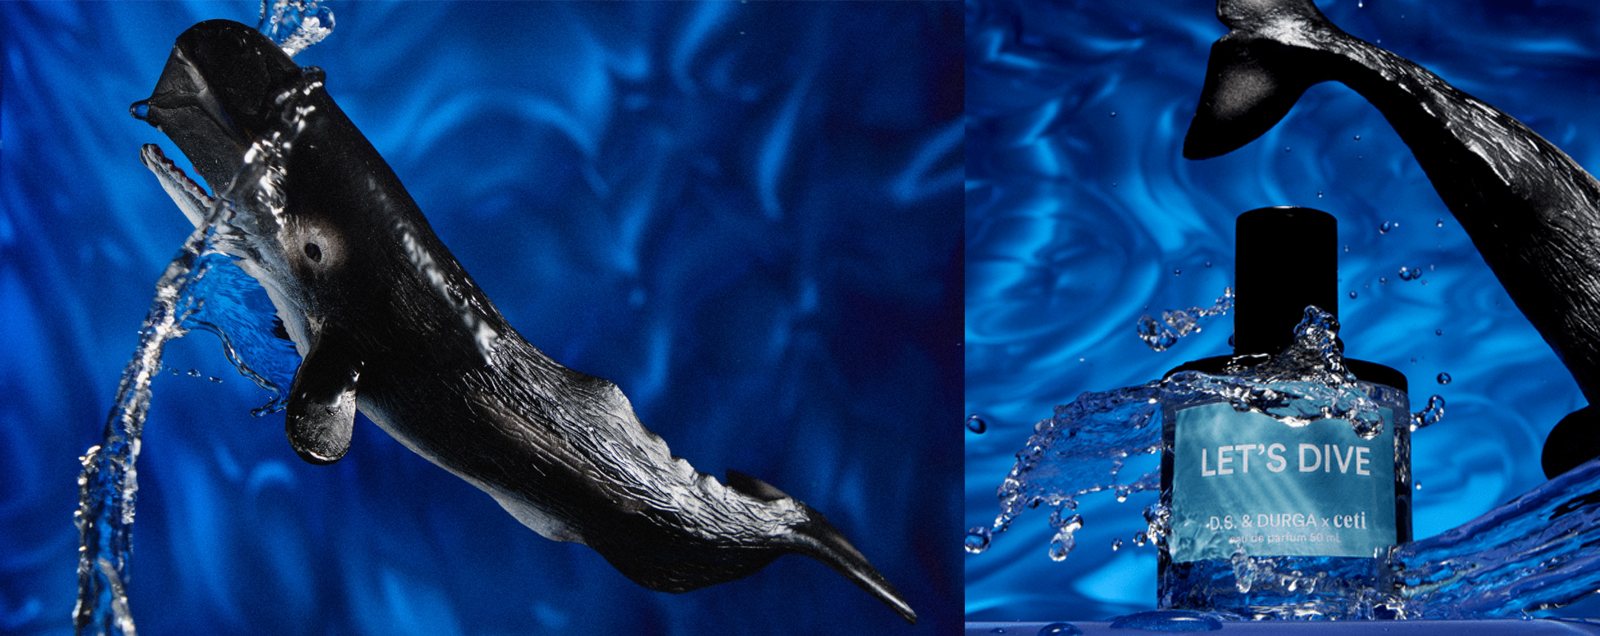 D.S.& Durga Let's Dive — аромат, вдохновленный китами